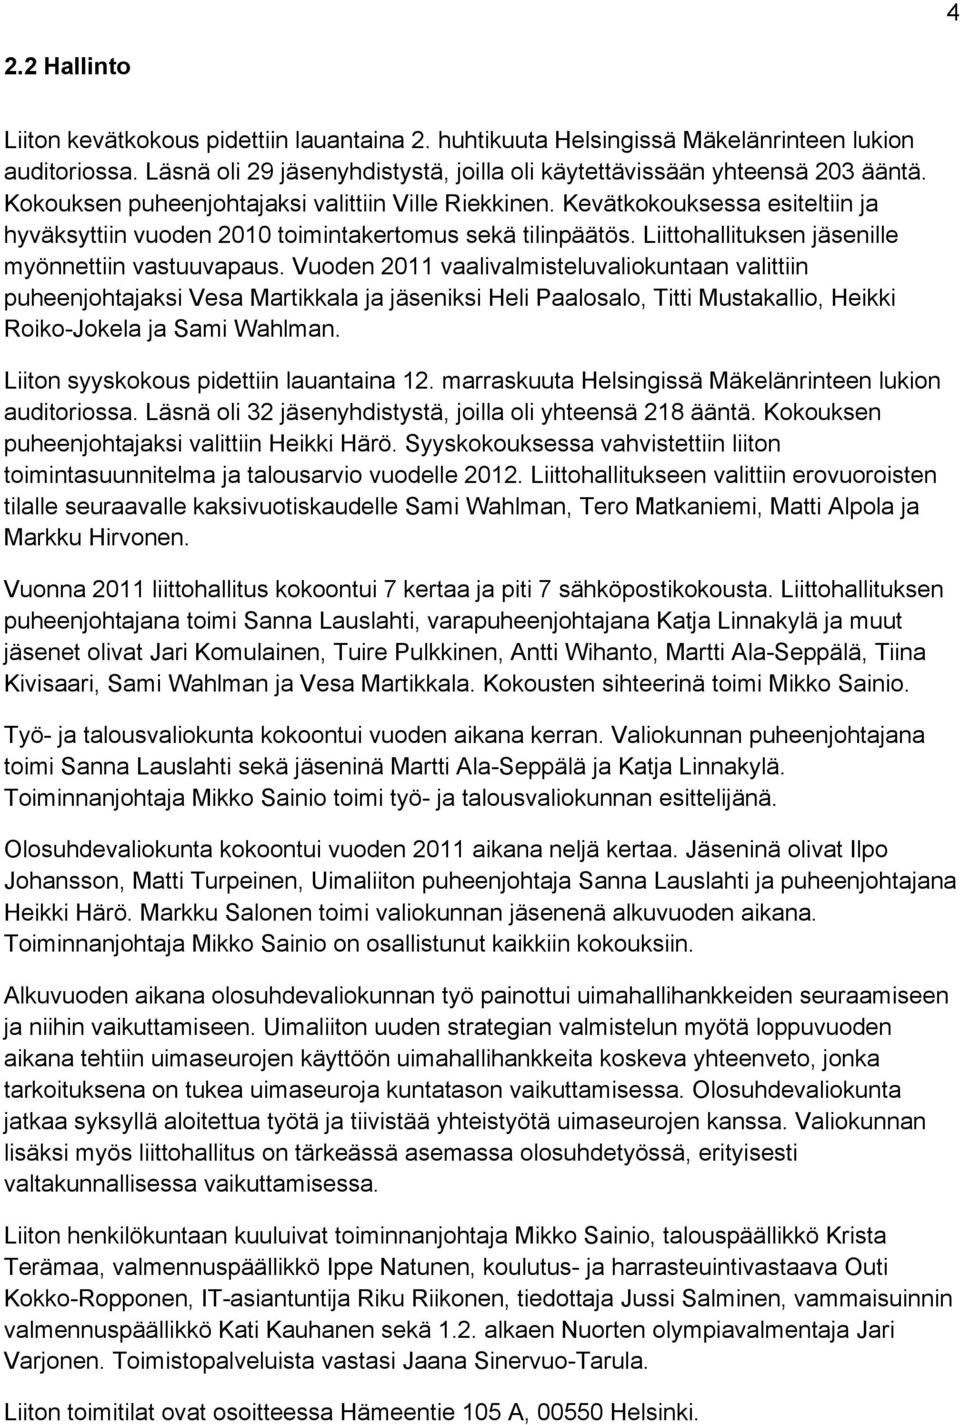 Vuoden 2011 vaalivalmisteluvaliokuntaan valittiin puheenjohtajaksi Vesa Martikkala ja jäseniksi Heli Paalosalo, Titti Mustakallio, Heikki Roiko-Jokela ja Sami Wahlman.